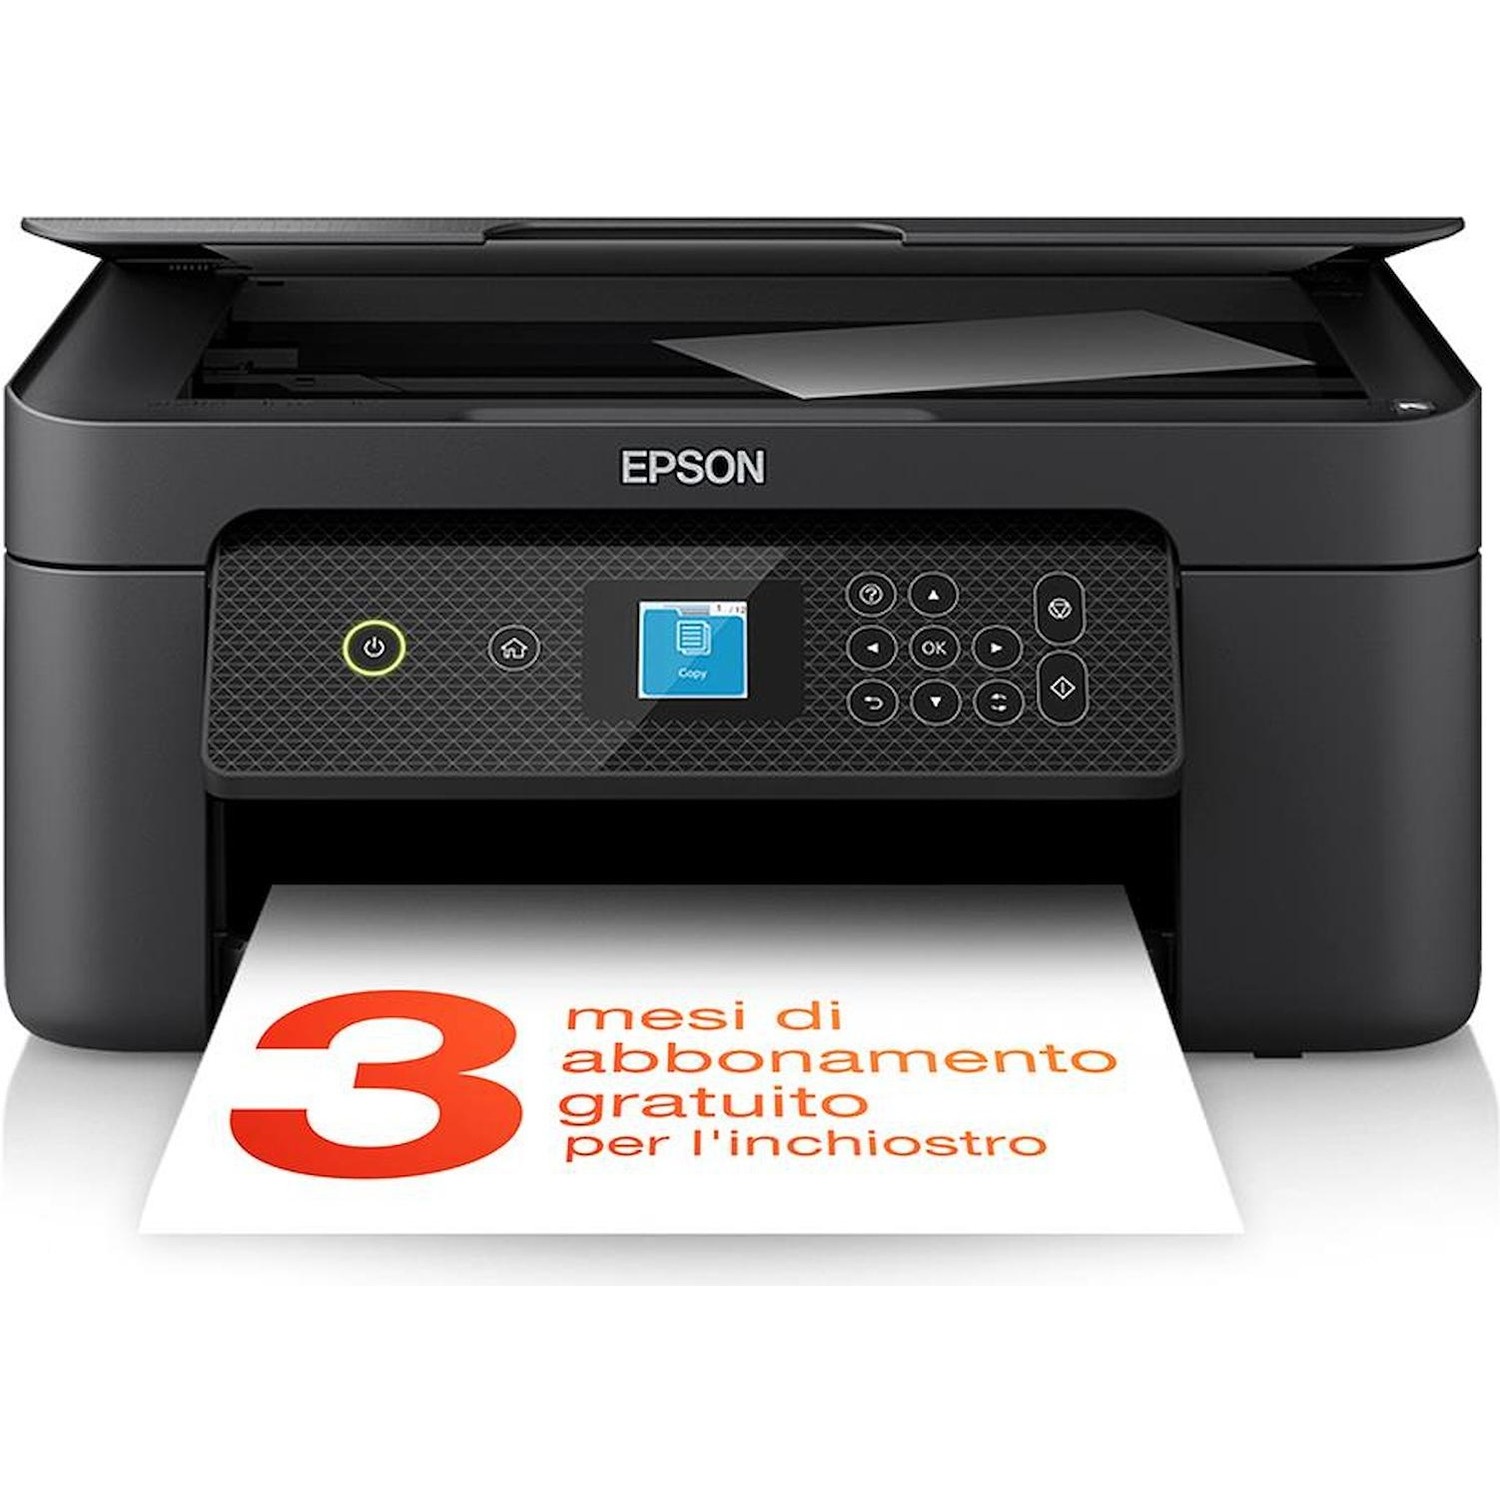 Immagine per Stampante multifunzione Epson XP-3200  nera da DIMOStore